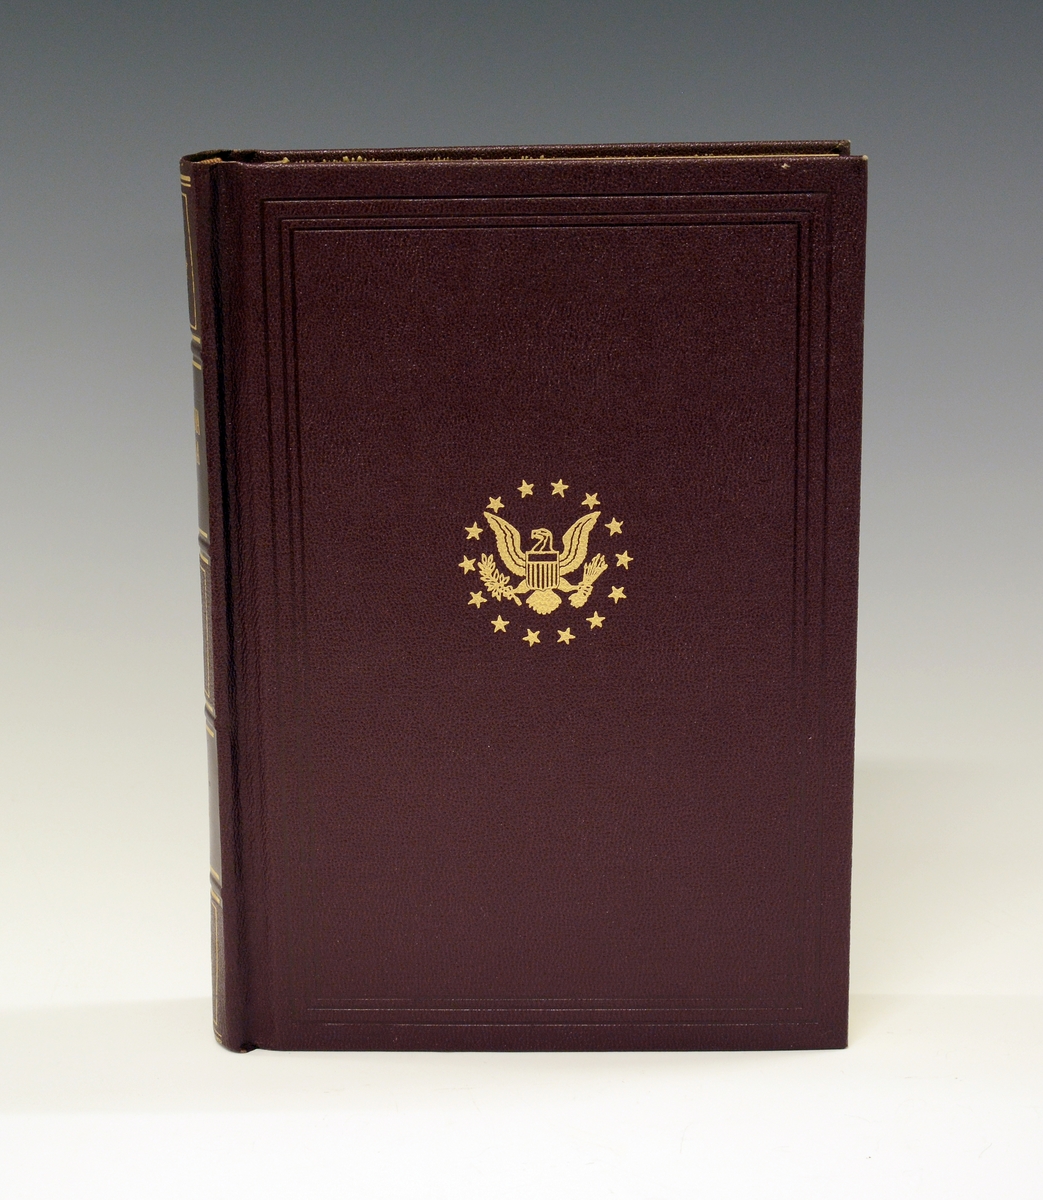 33 bind bøker, amerikansk leksikon, "The Encyclopedia Americana" 1953 i 30 bind, samt tre årstillegg 1954, 1955 og 1956. Mørk burgunder innbinding med gulldekor.